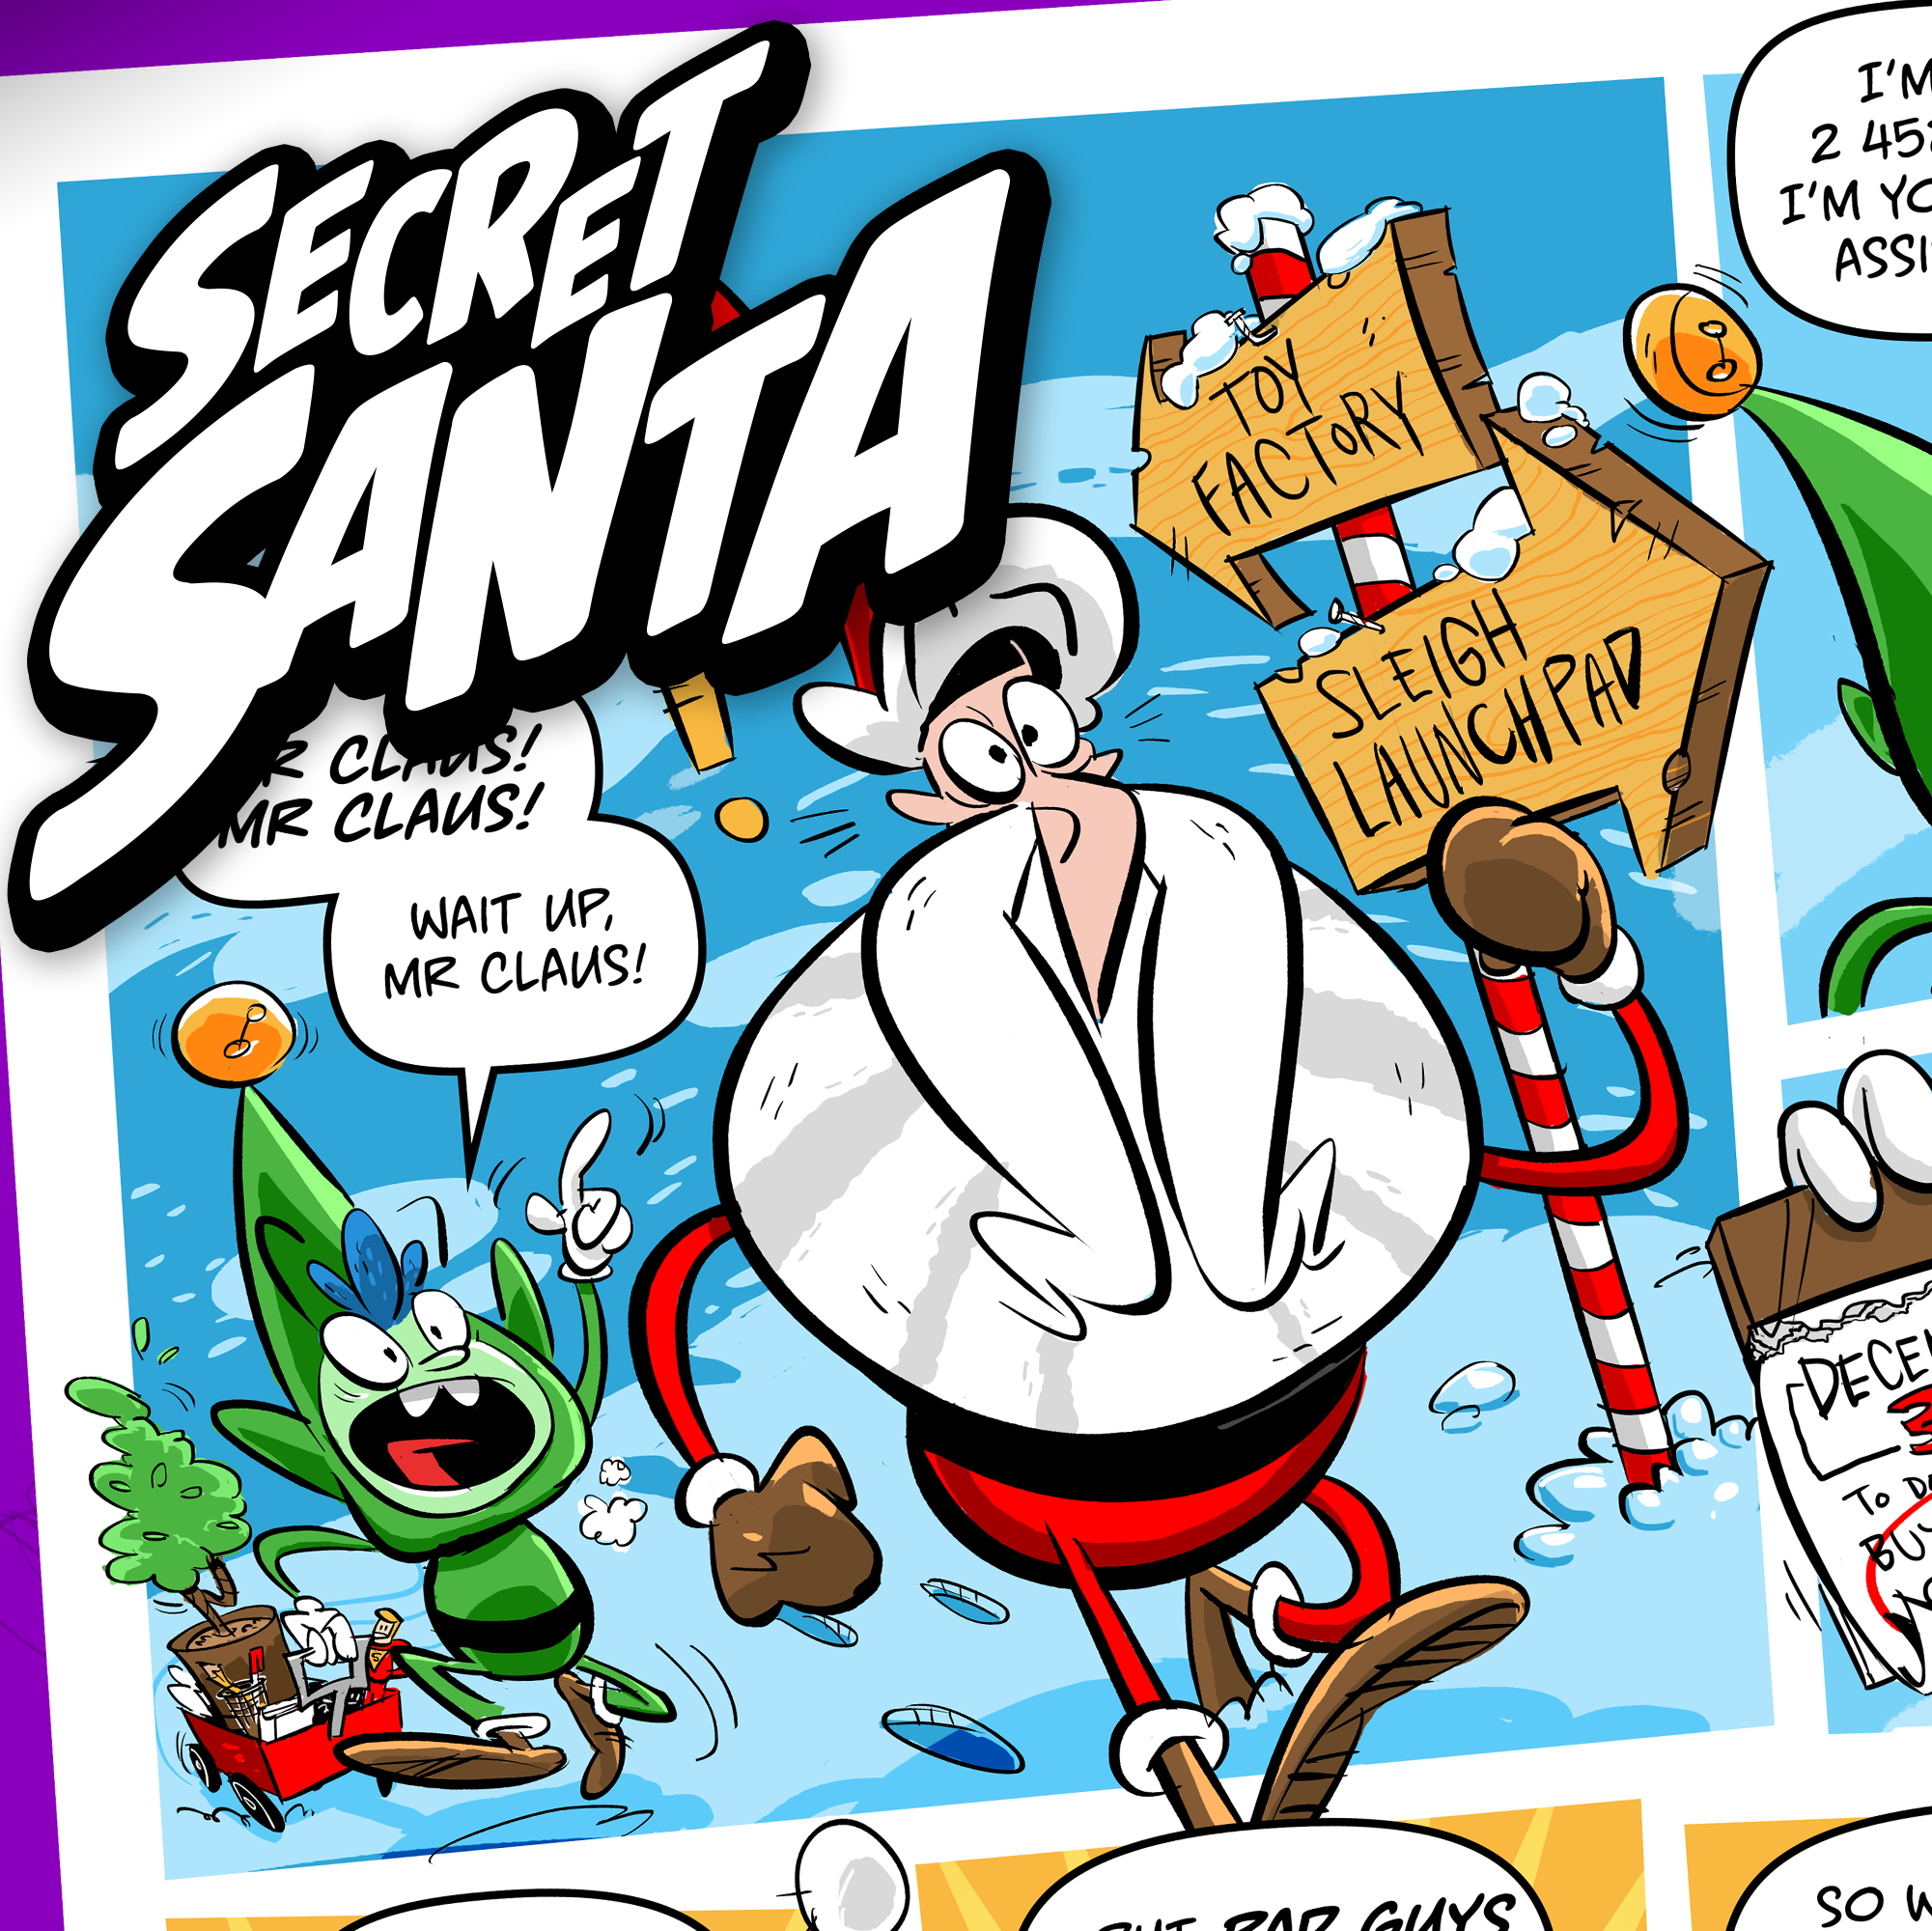 Secret Santa: New Year's Thieves - Tony Draws!